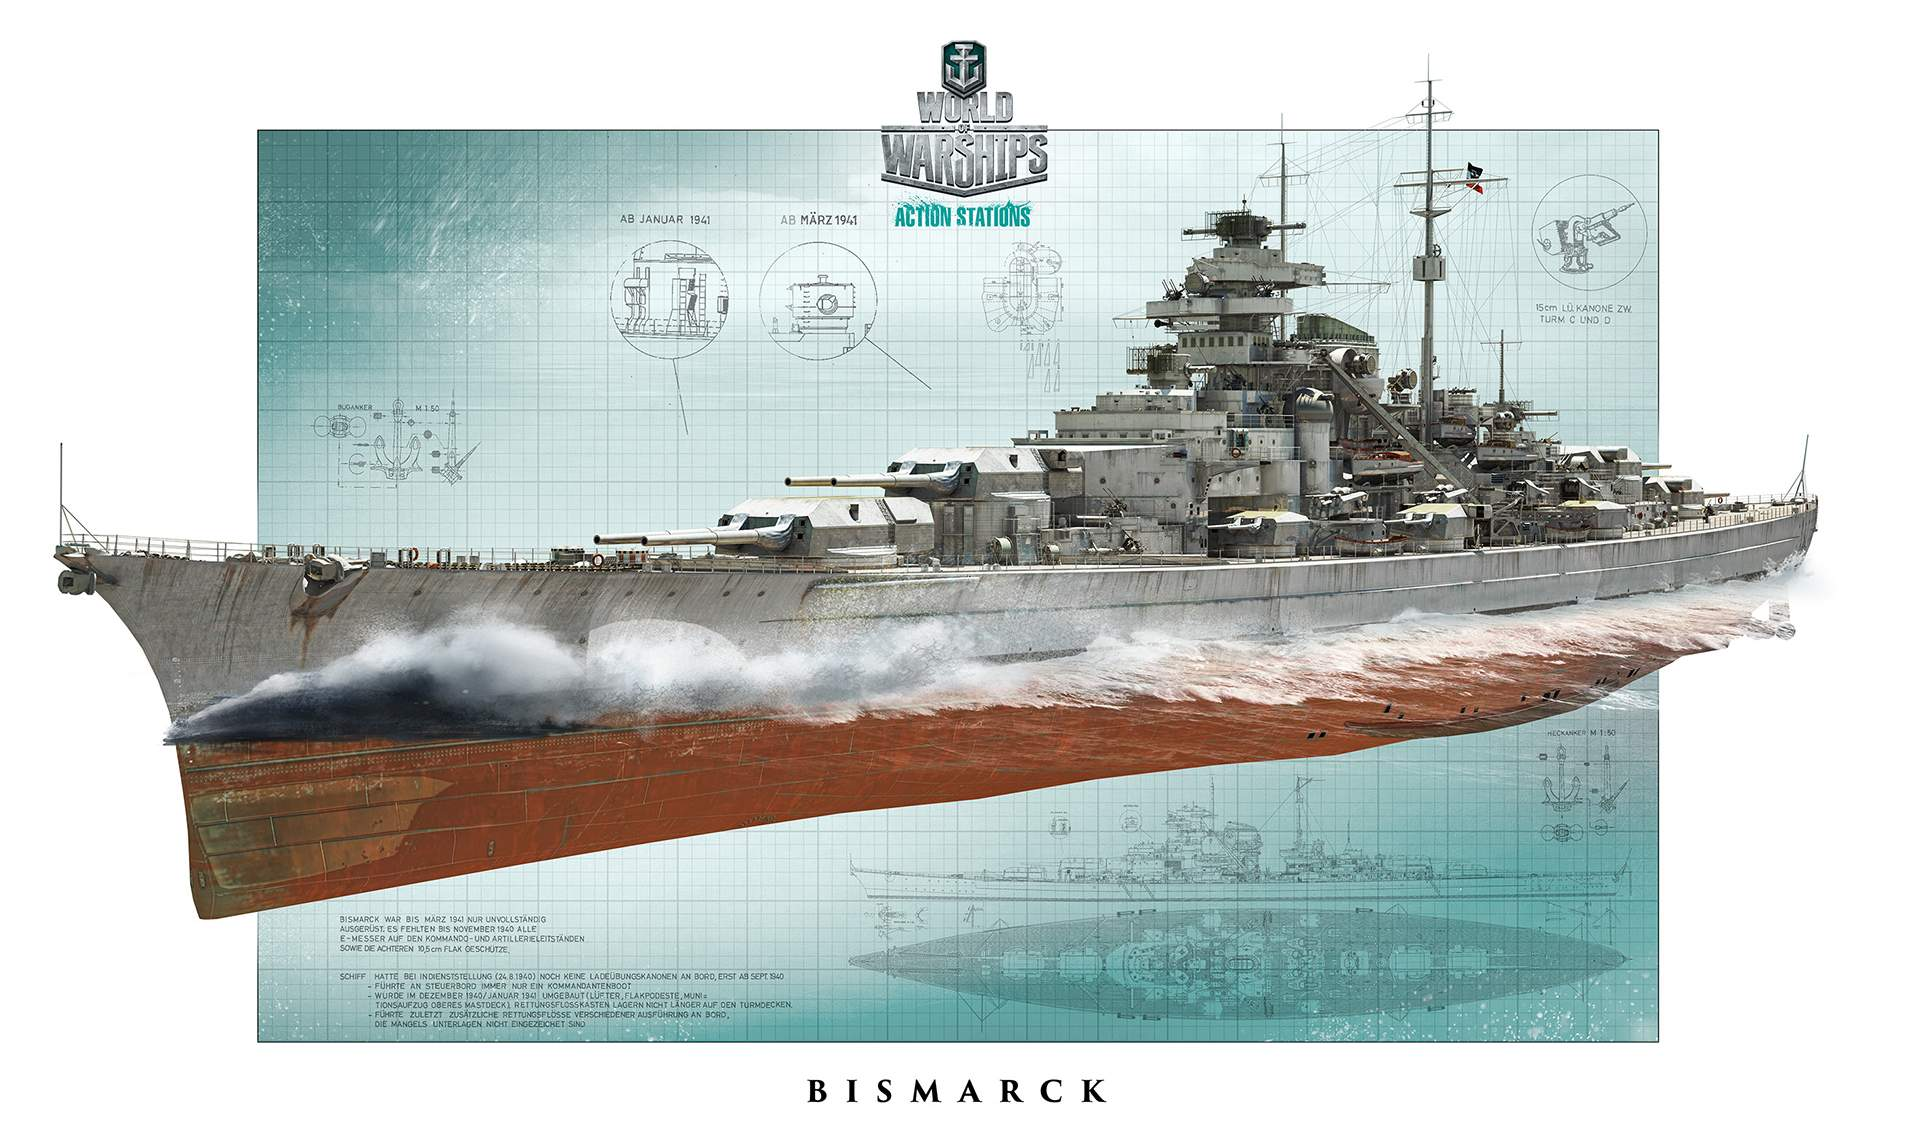 General 1905x1135 Bismarck (ship) World of Warships  video games artwork ship Battleships Kriegsmarine wargaming